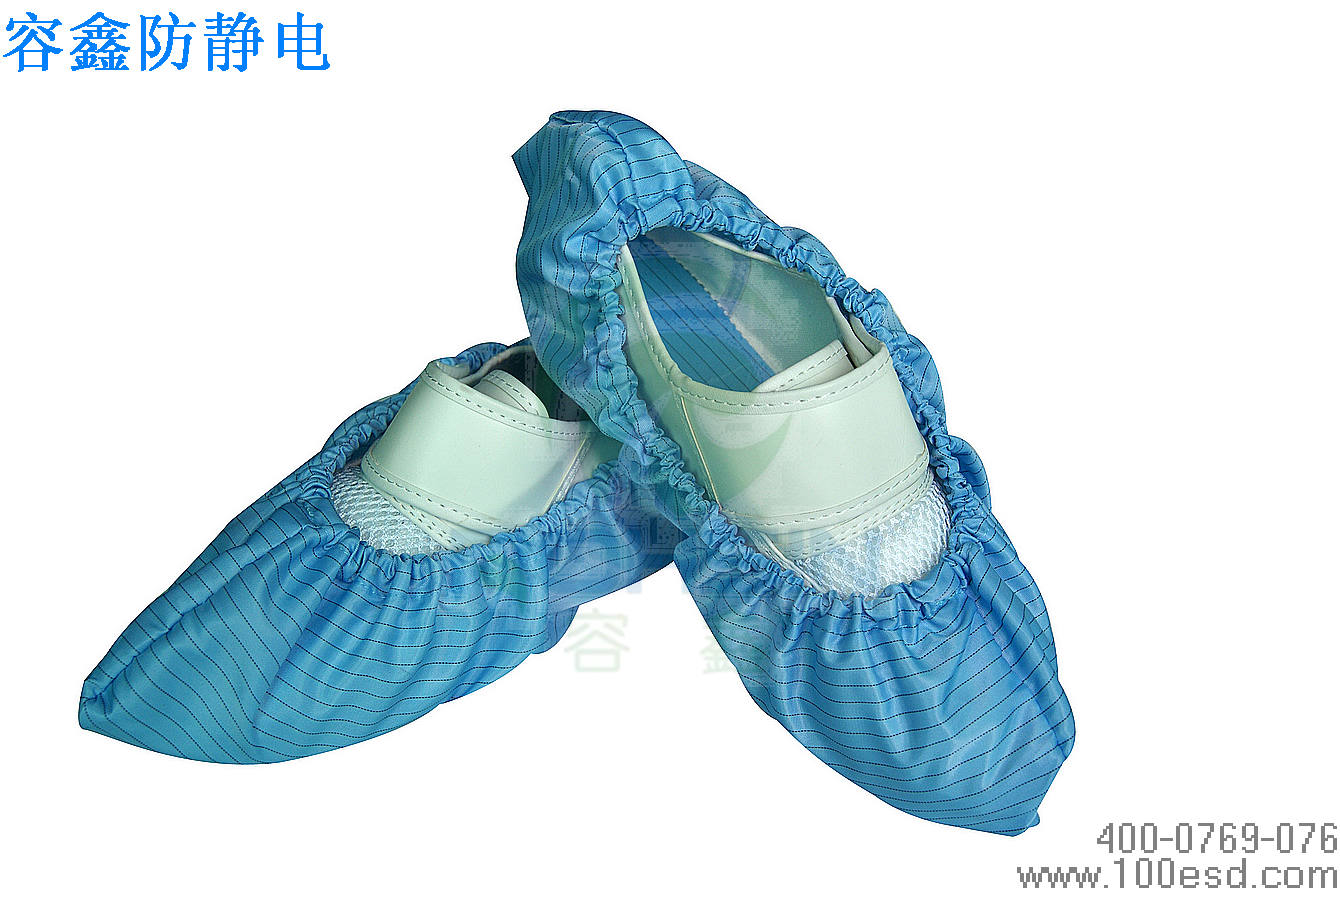 防静电服装鞋帽首选容鑫品牌,中国最好的防静电服装鞋帽4000769076